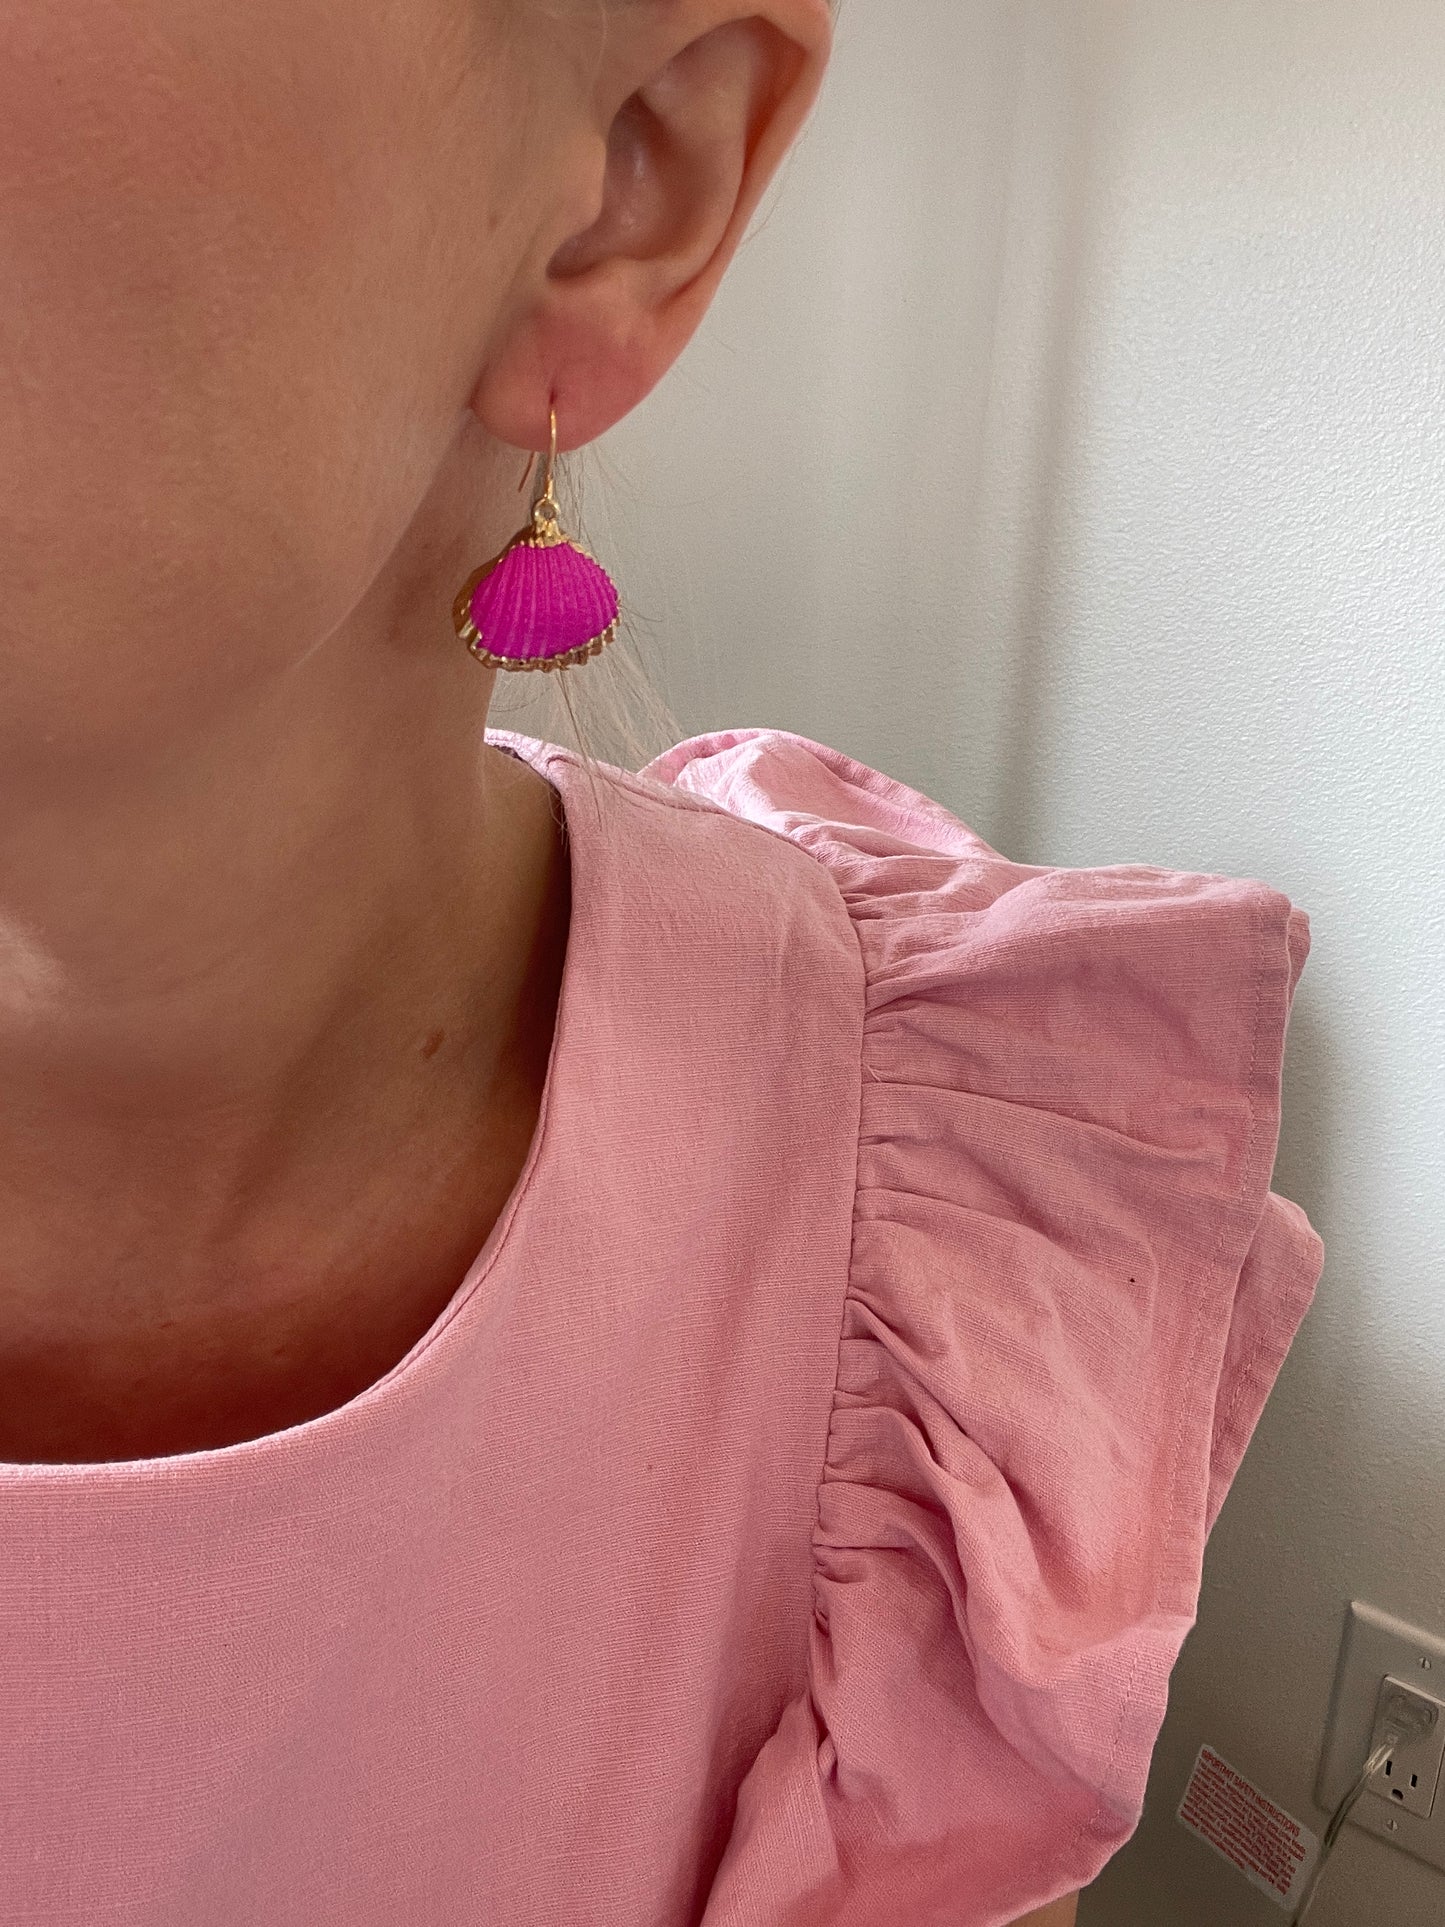 Hot Pink Shell Earrings